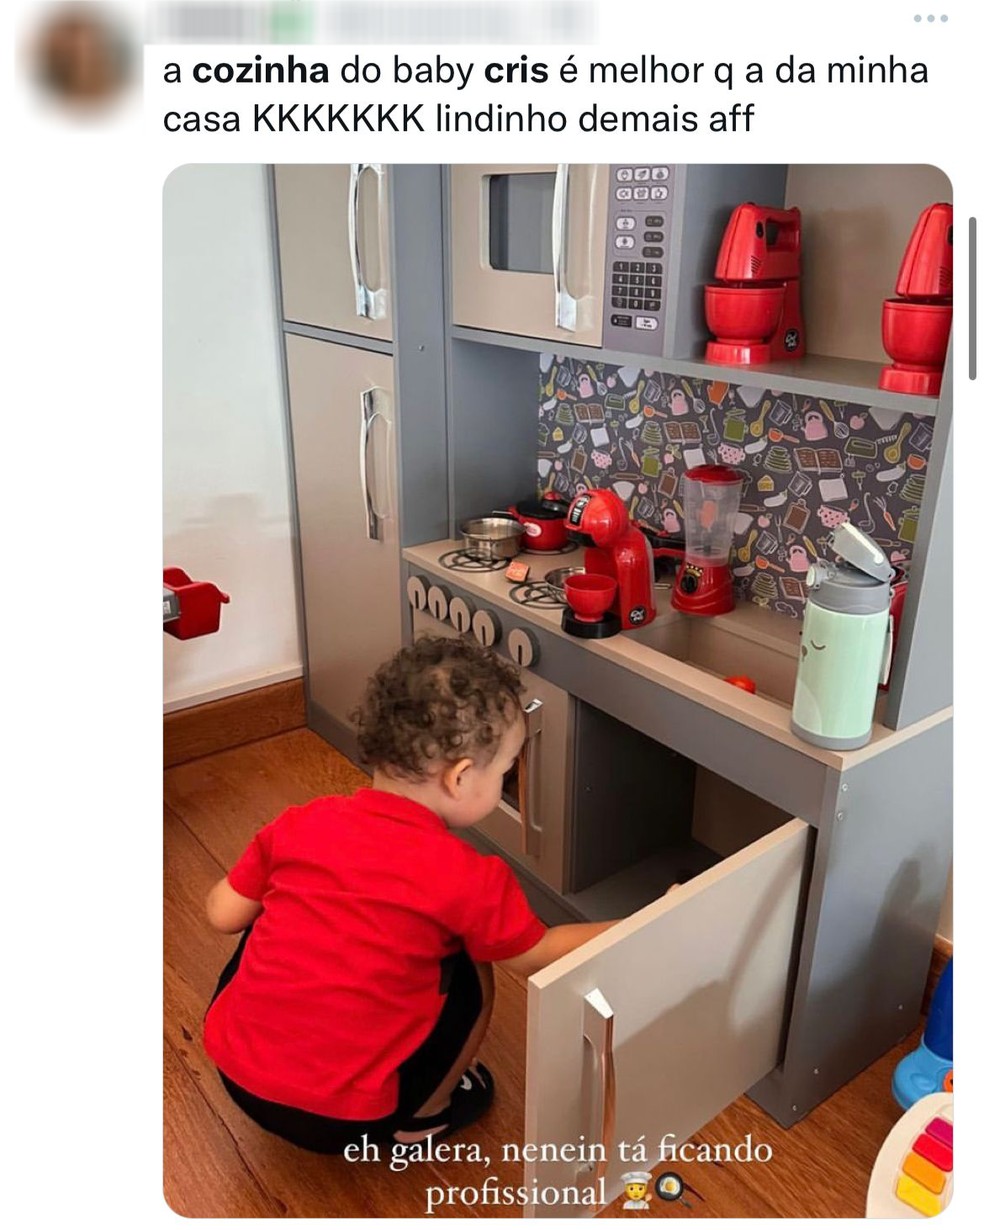 Anônimos comentam sobre a cozinha de brinquedo de Cris, filho de Bianca Andrade com Fred — Foto: Reprodução/Twitter